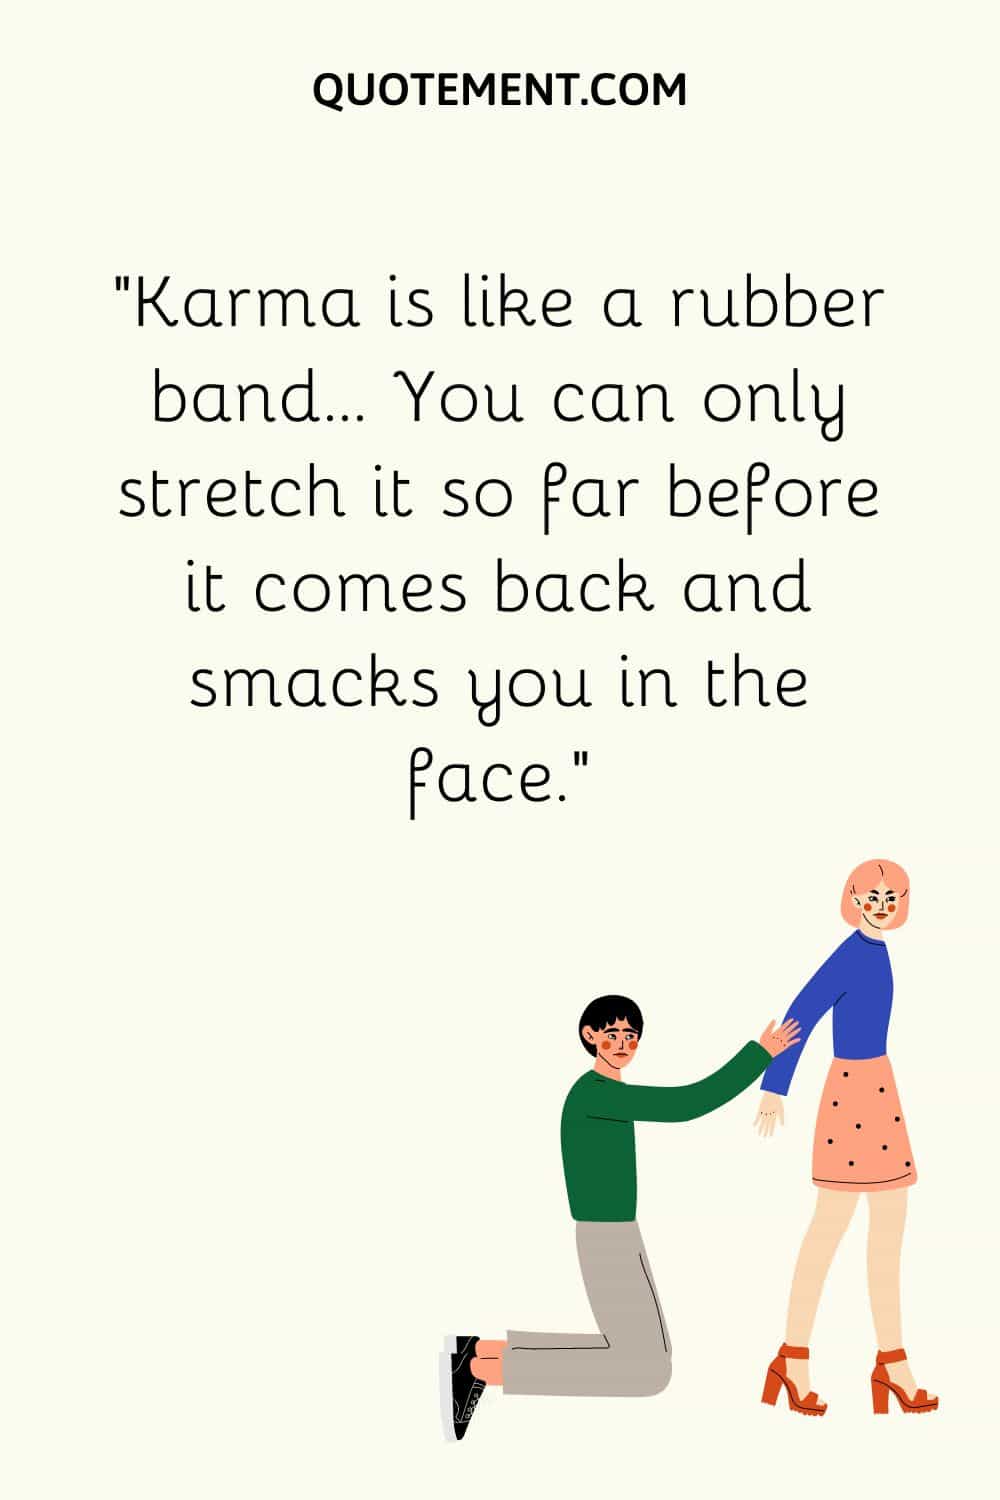 Karma is like a rubber band